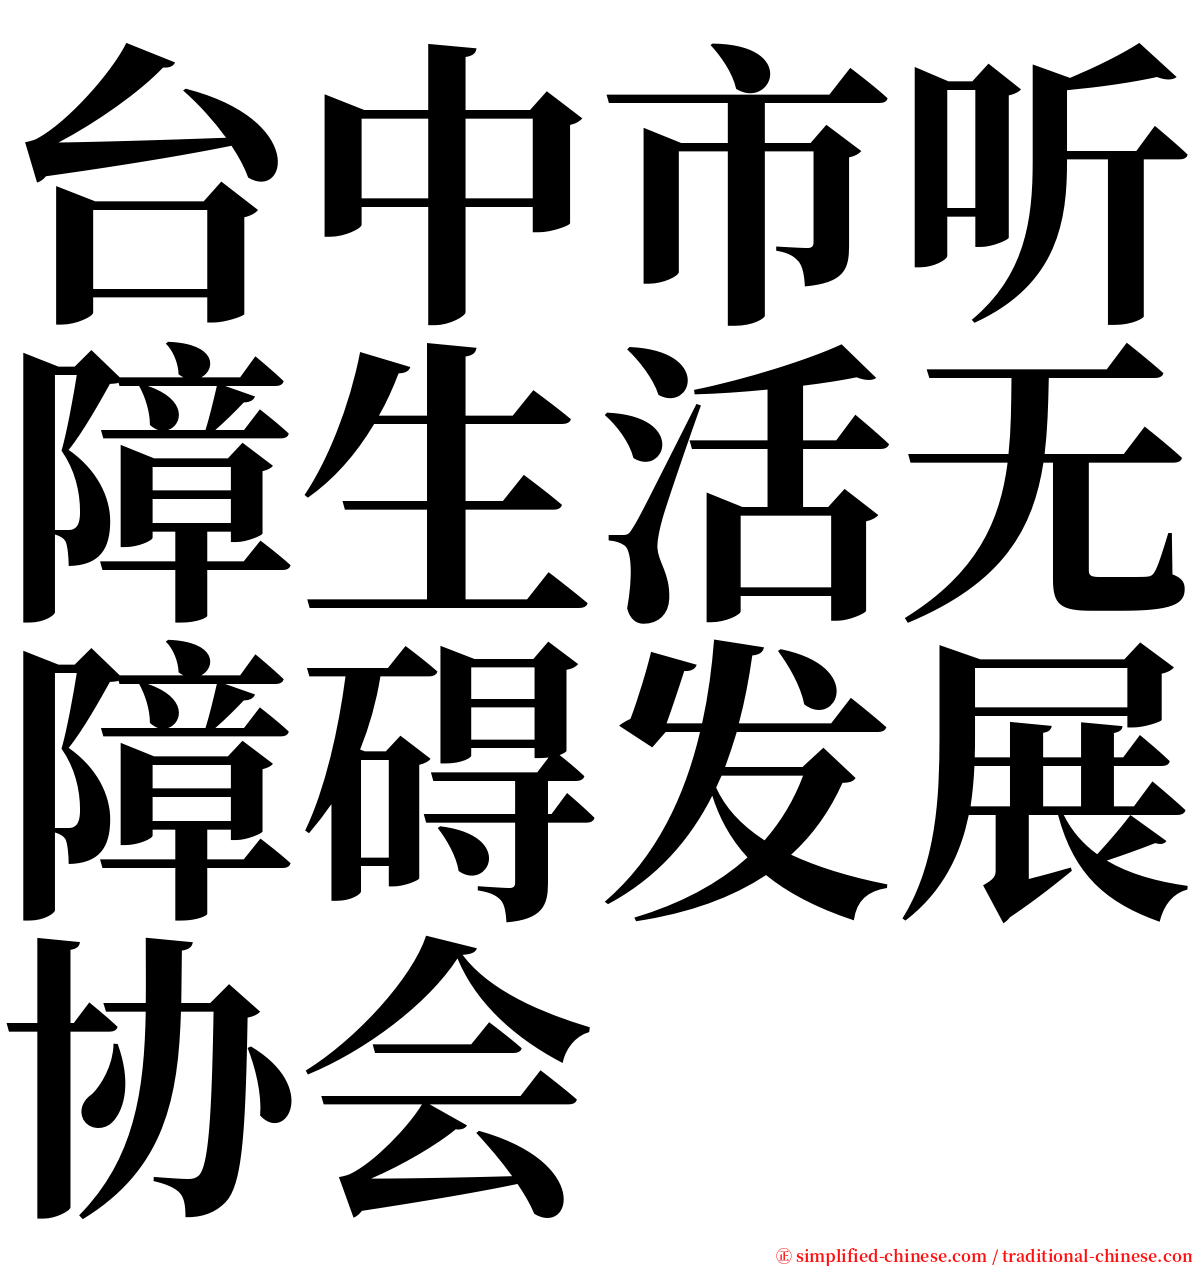 台中市听障生活无障碍发展协会 serif font